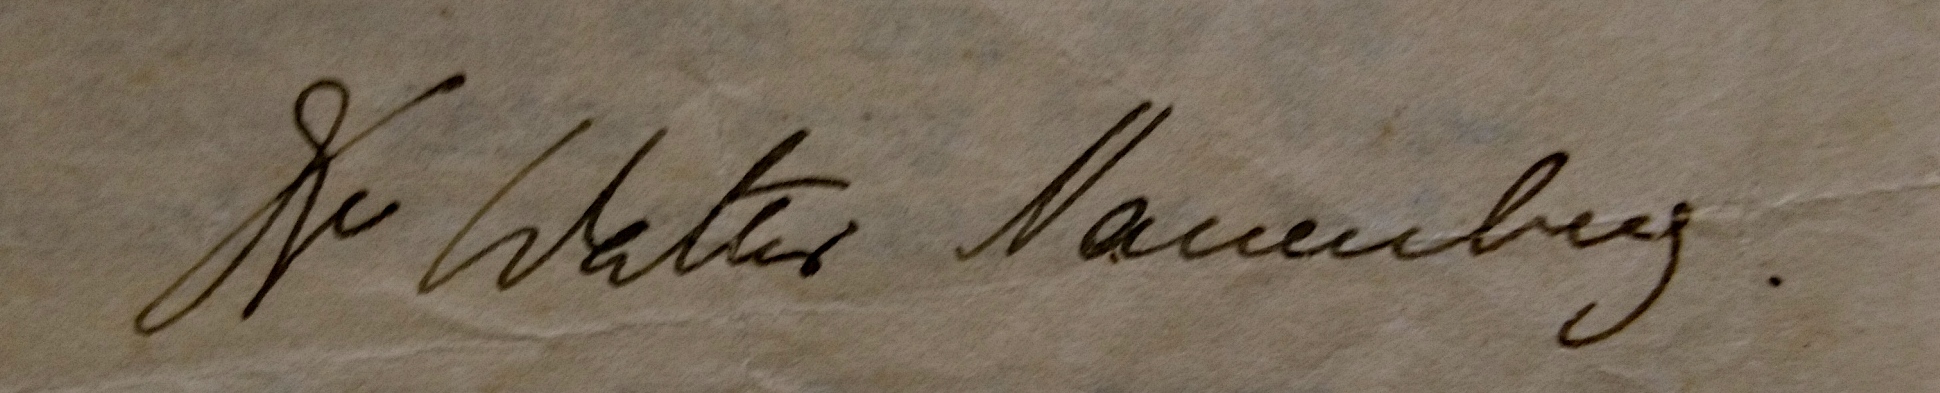 Walter Nauenberg.  Handwritten signature